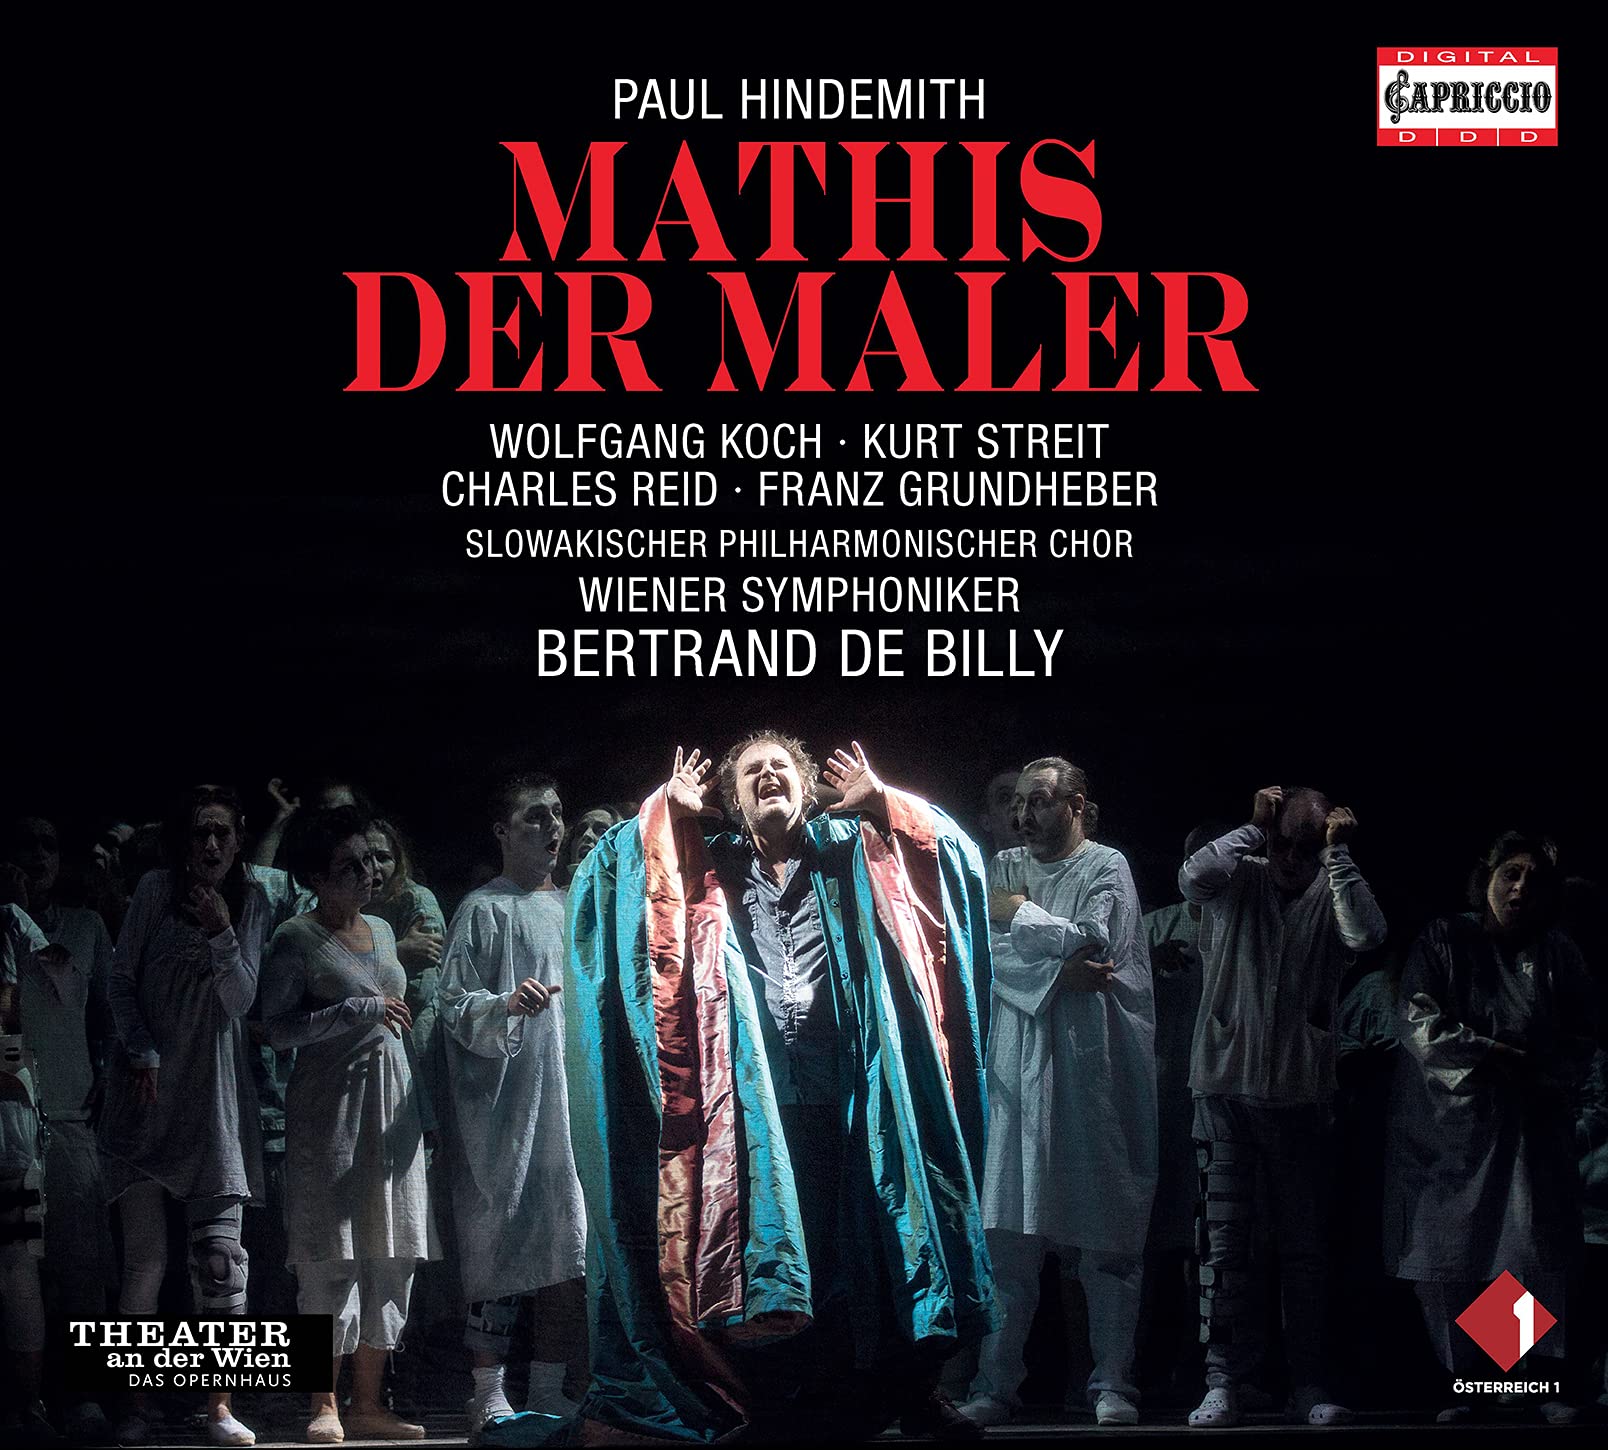 Audio Cd Paul Hindemith - Mathis Der Maler (3 Cd) NUOVO SIGILLATO, EDIZIONE DEL 10/08/2021 SUBITO DISPONIBILE